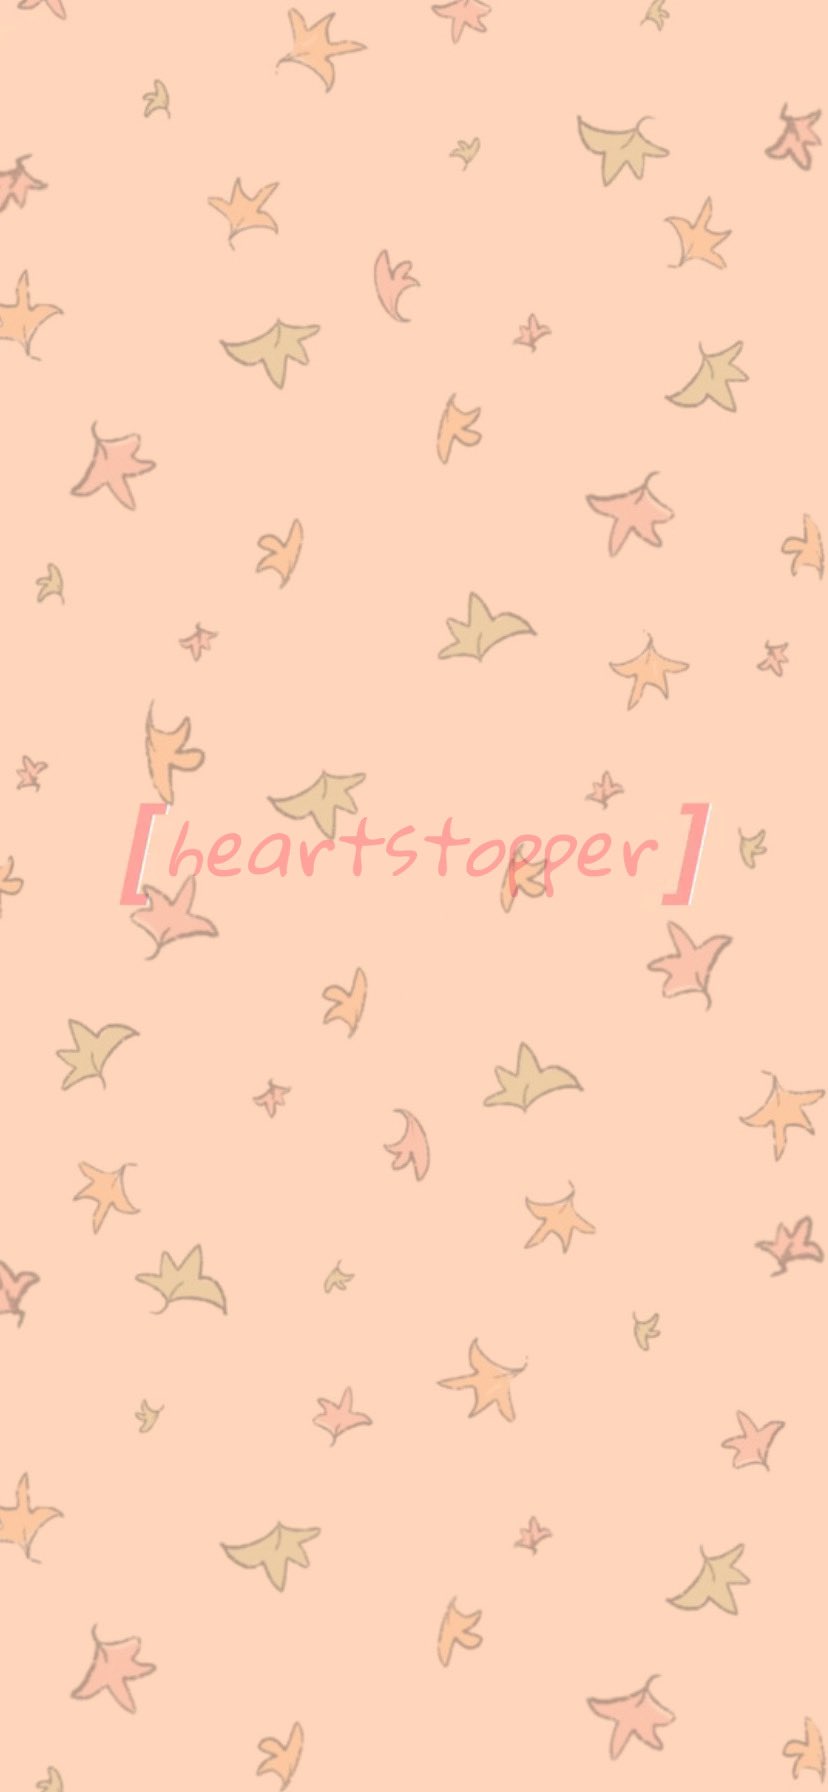 Heartstopper leaves HD wallpapers  Pxfuel